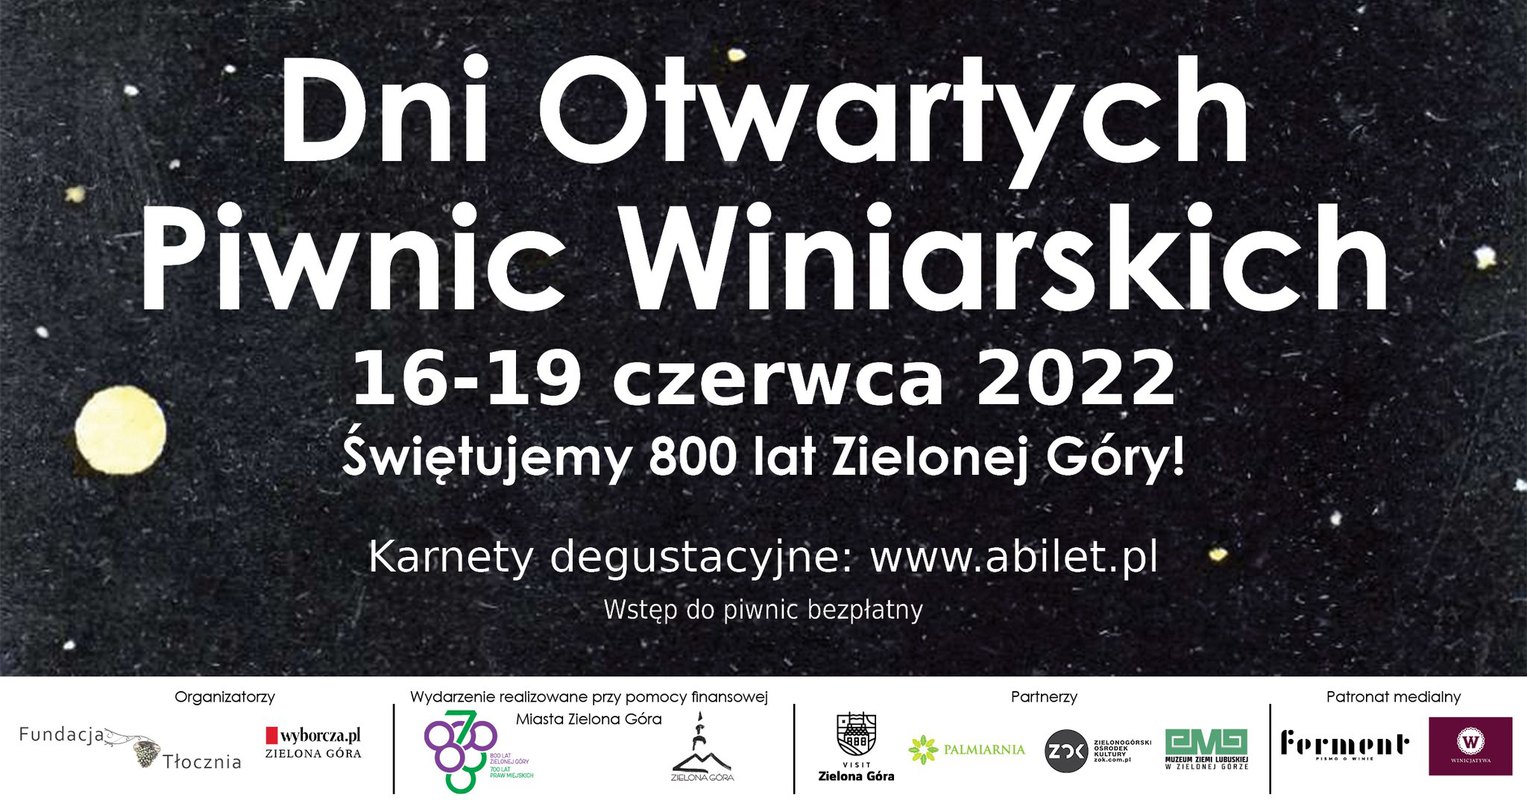 Dni Otwartych Piwnic Winiarskich 16 - 19 czerwca 2022